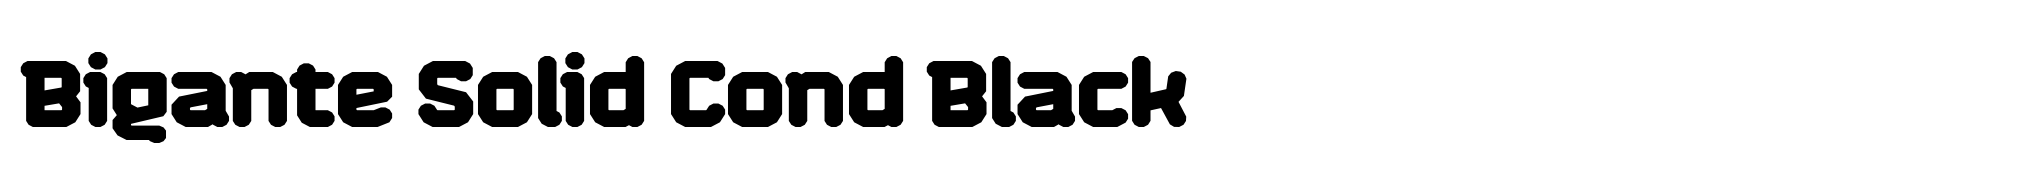 Bigante Solid Cond Black image